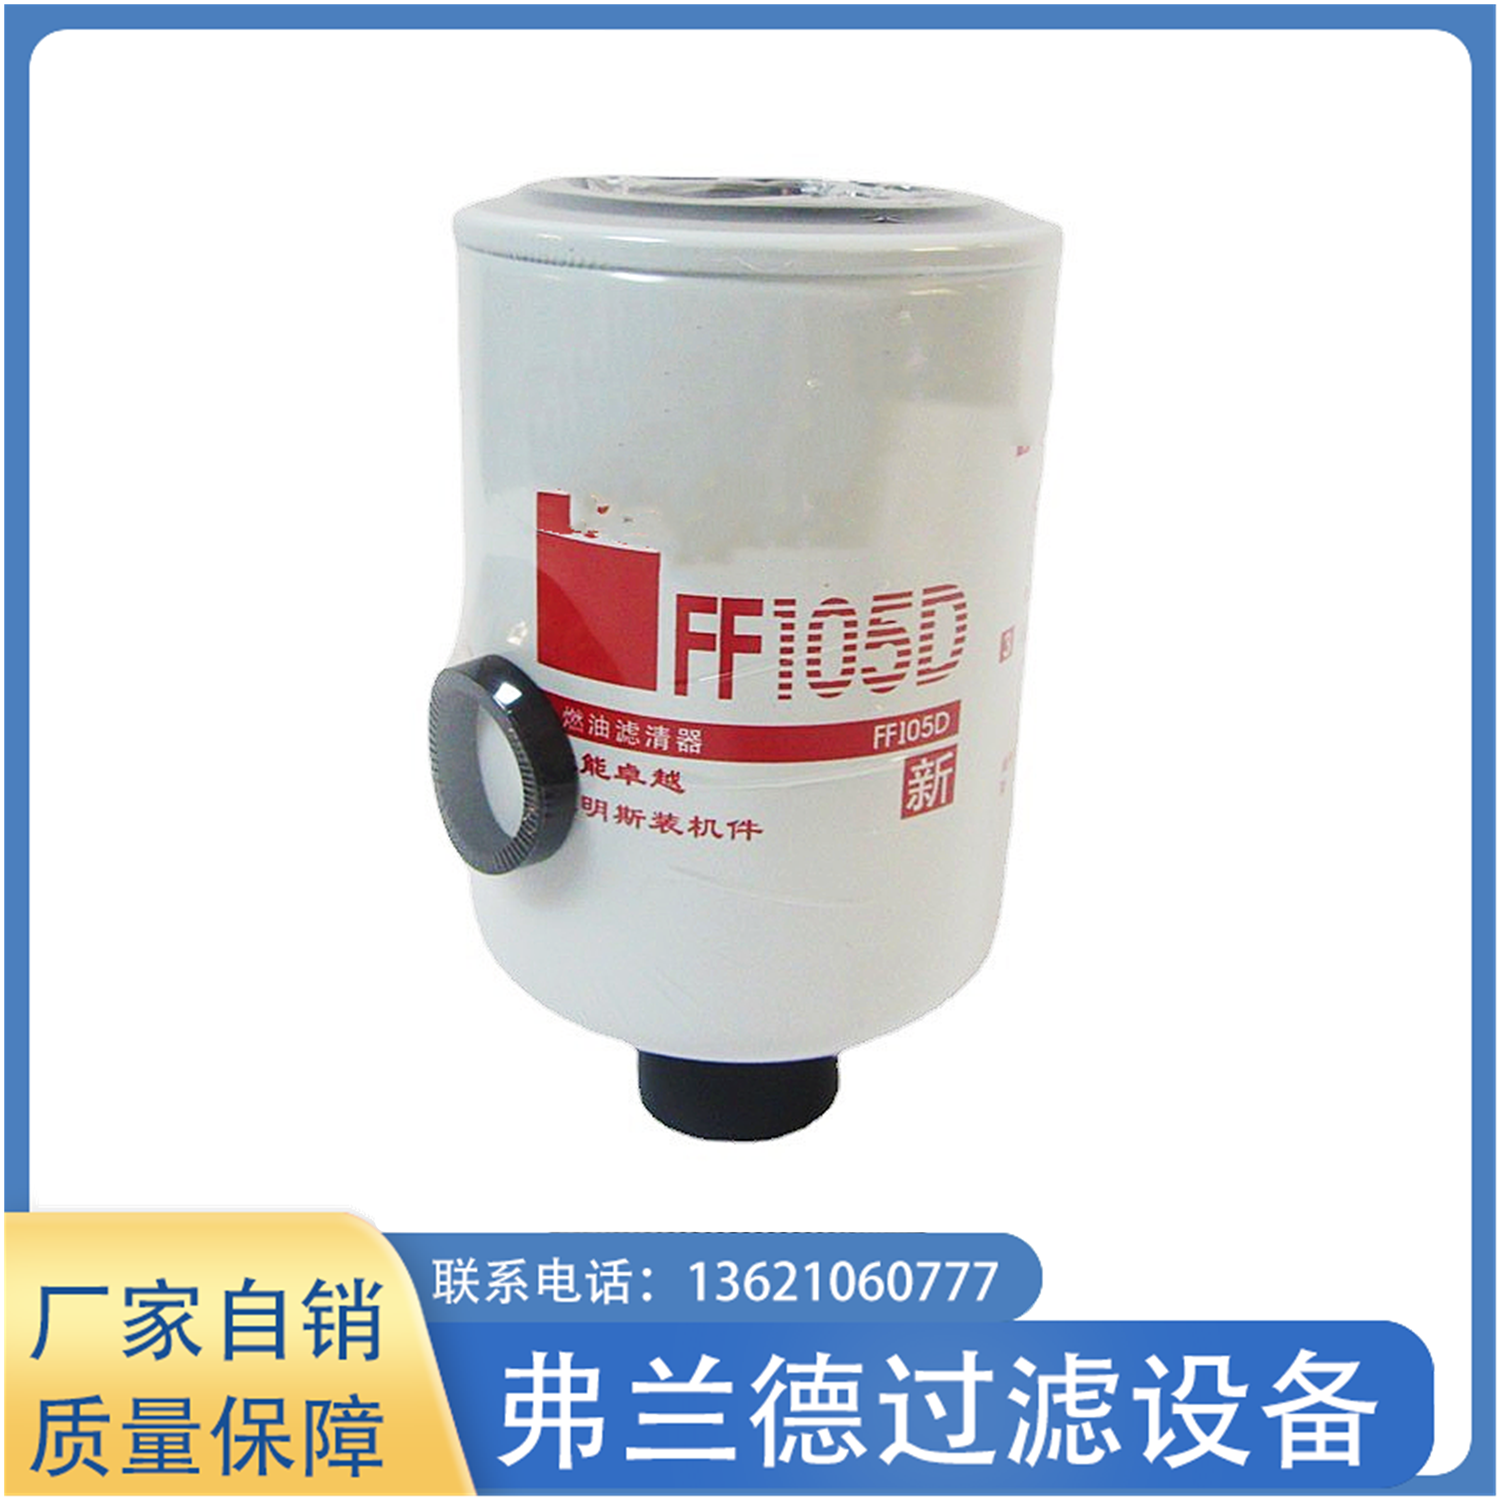 FF105D BF957-D 154789 P550106 TB630 HF-1994 fuel filter